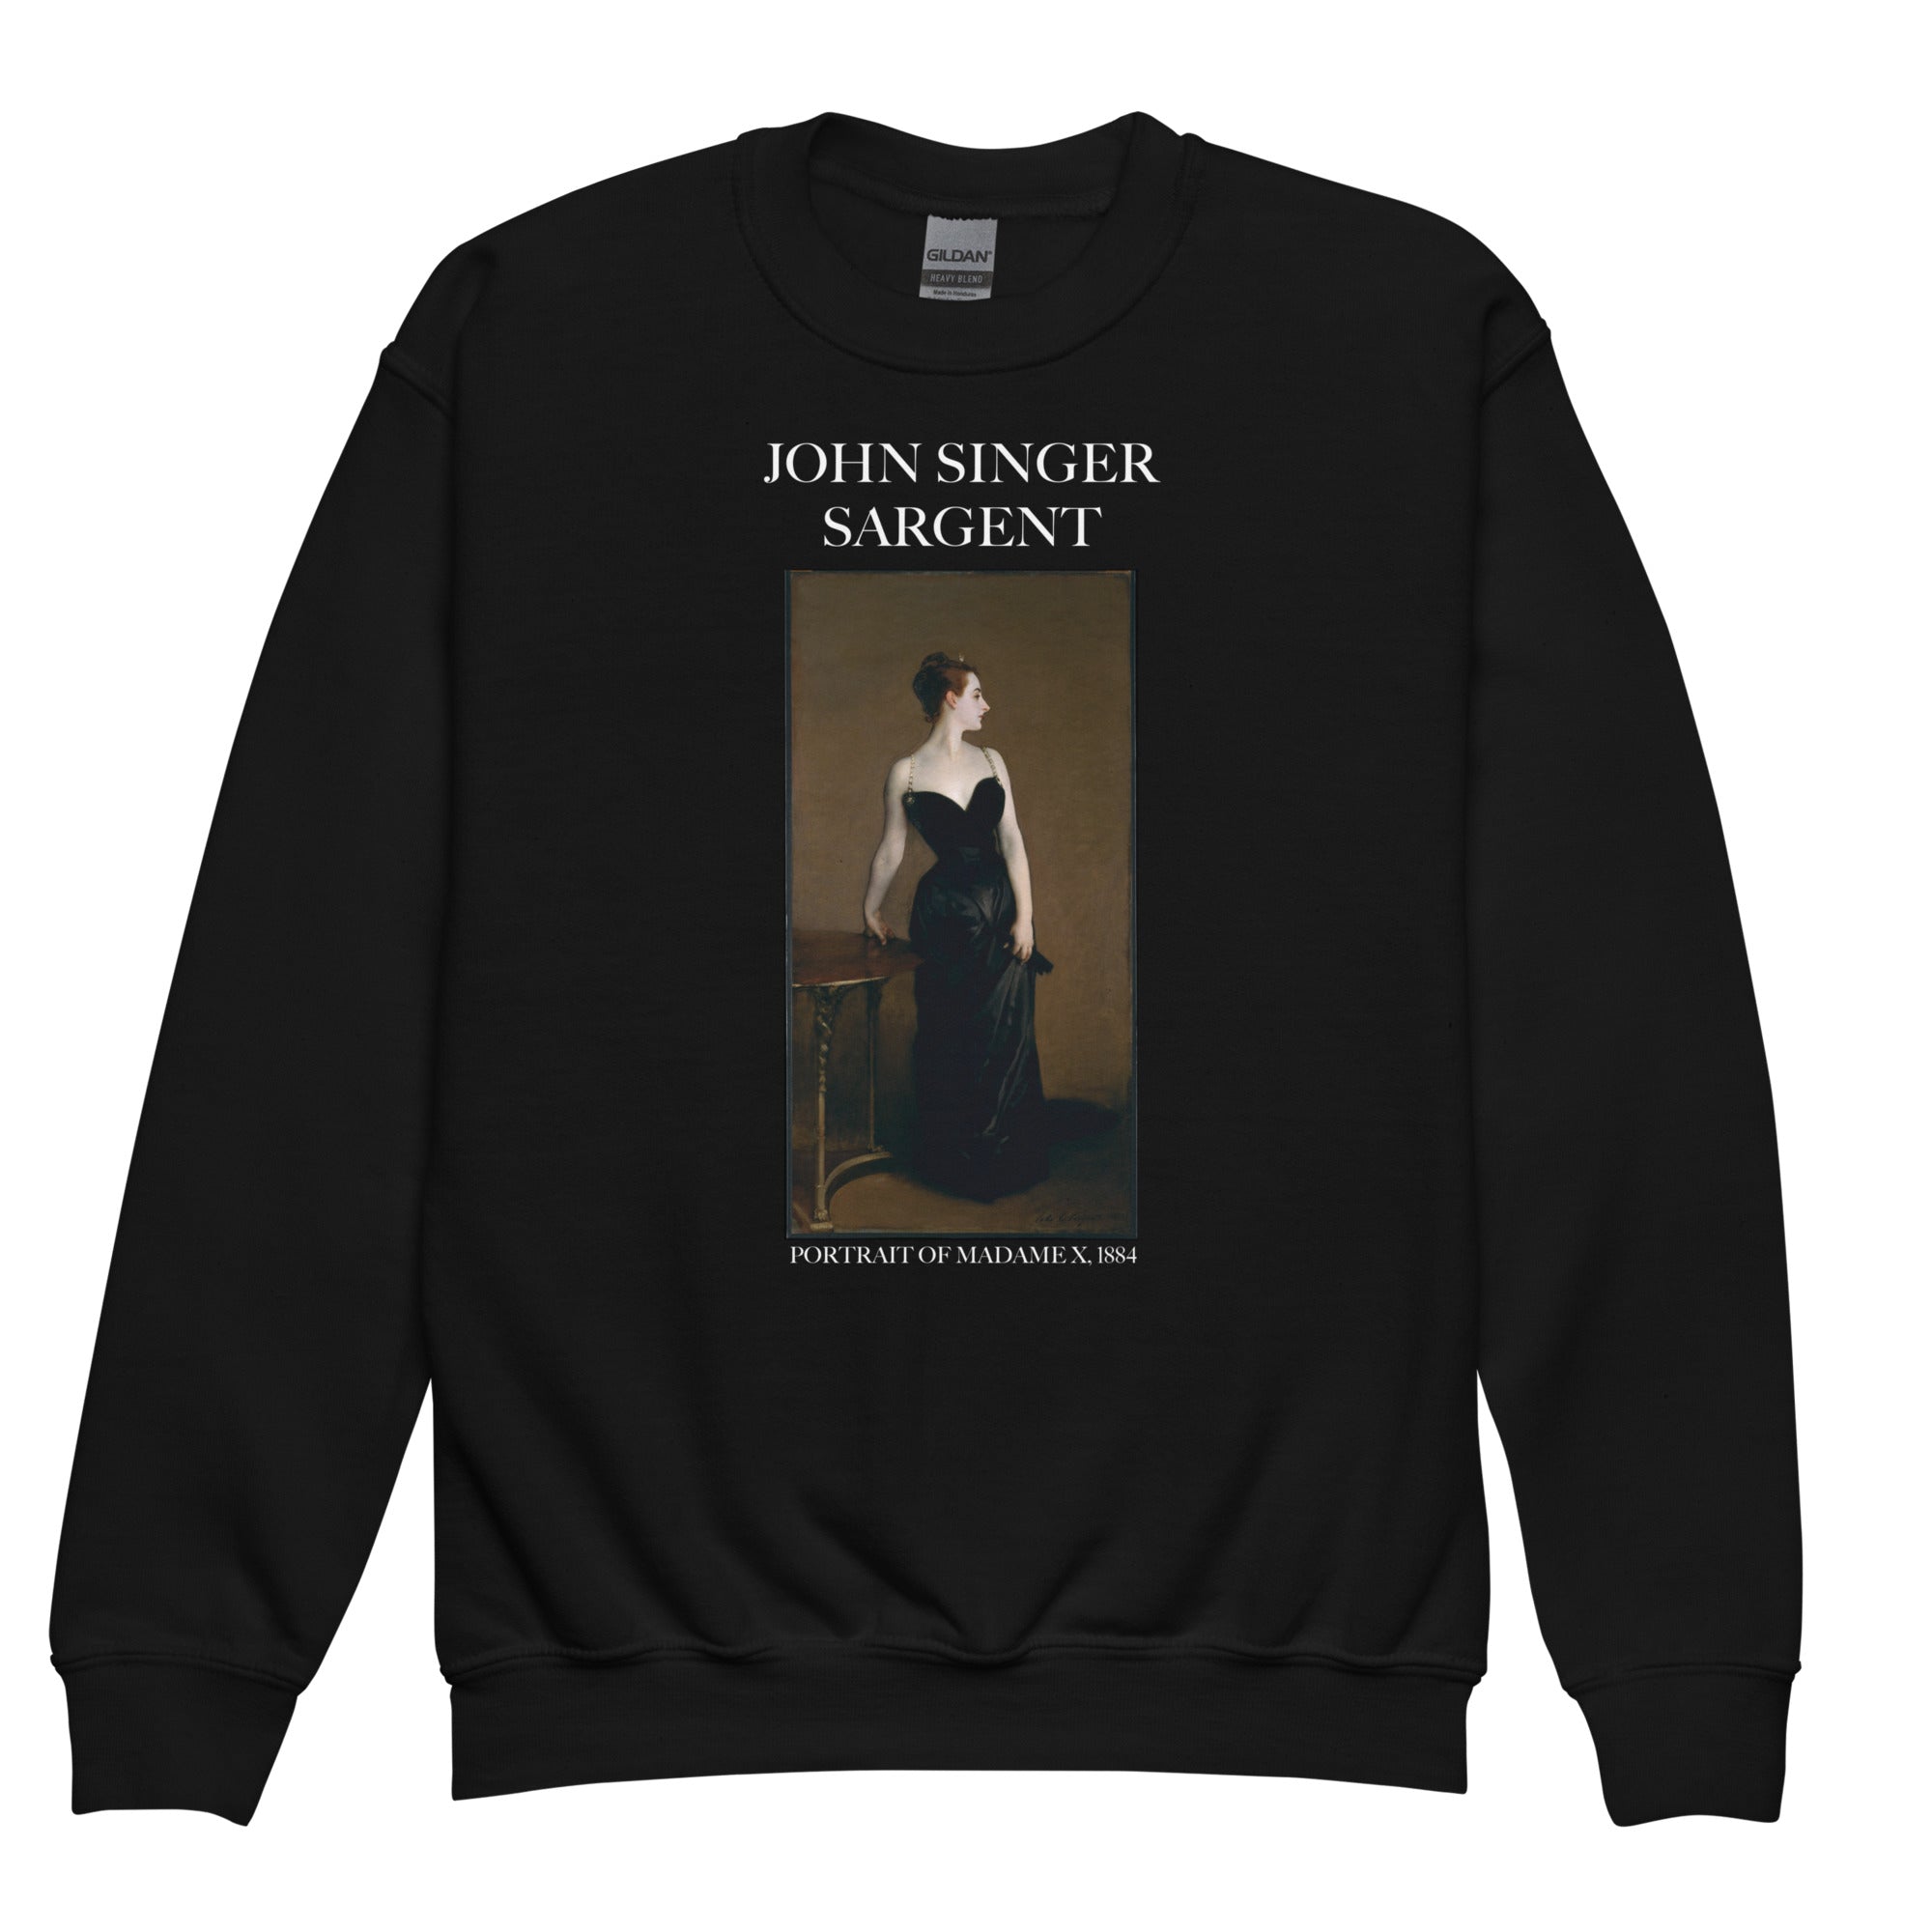 Rundhals-Sweatshirt mit berühmtem Gemälde „Portrait of Madame X“ von John Singer Sargent | Hochwertiges Kunst-Sweatshirt für Jugendliche